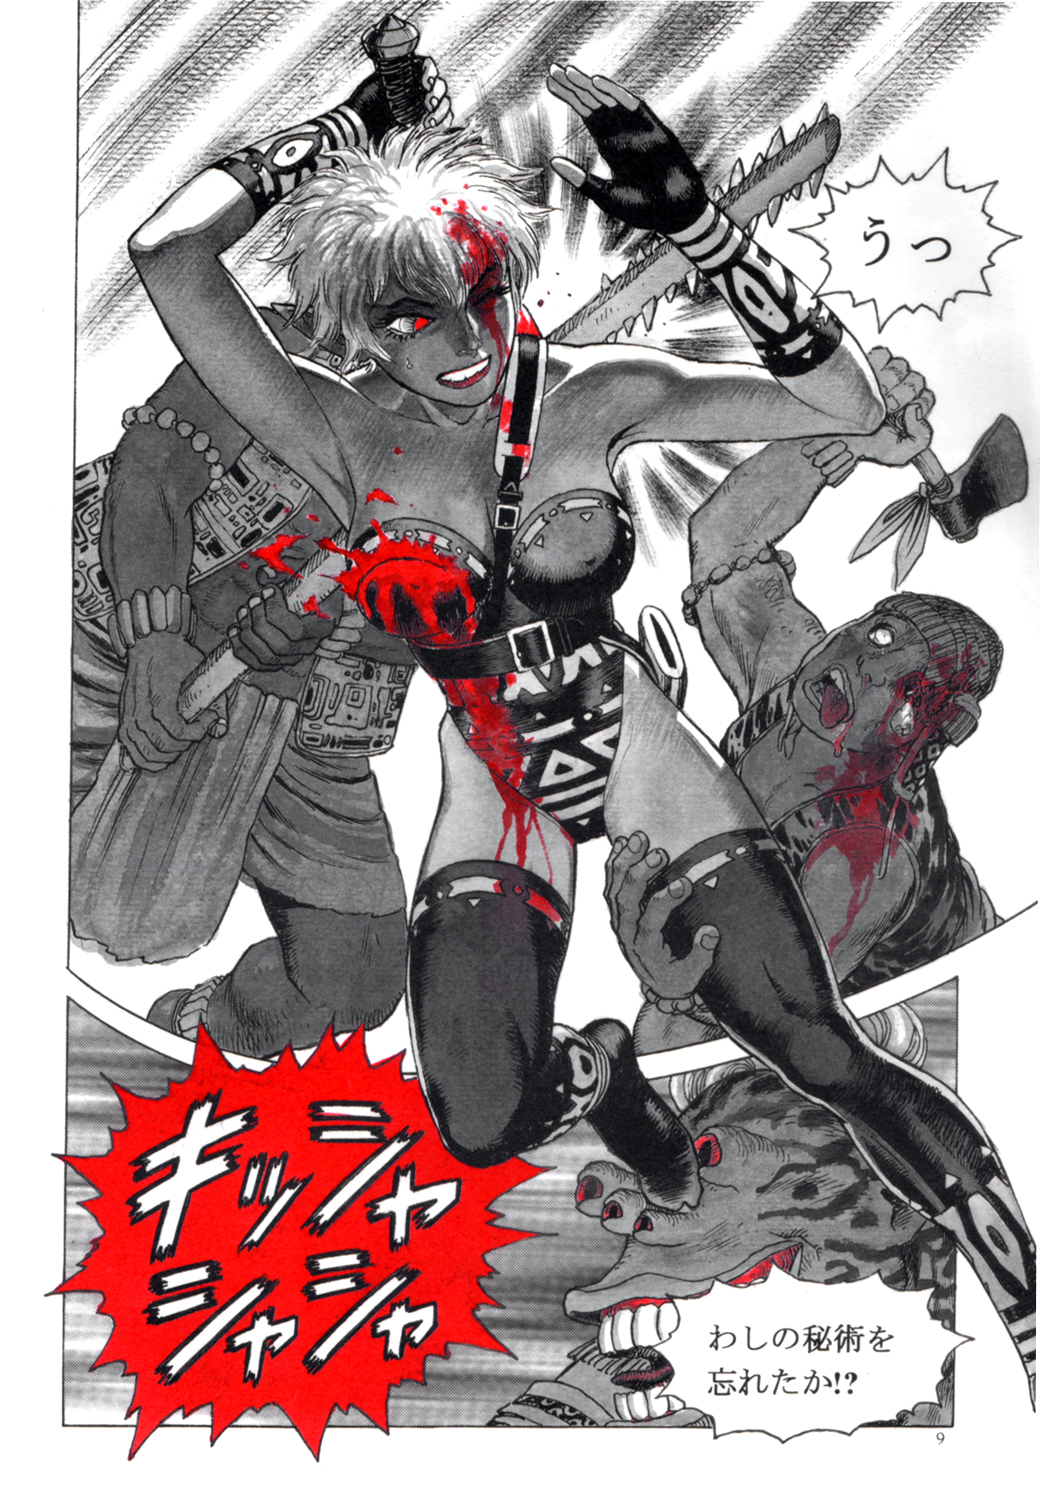 [Yamamoto Atsuji] Zombie Warriors page 8 full